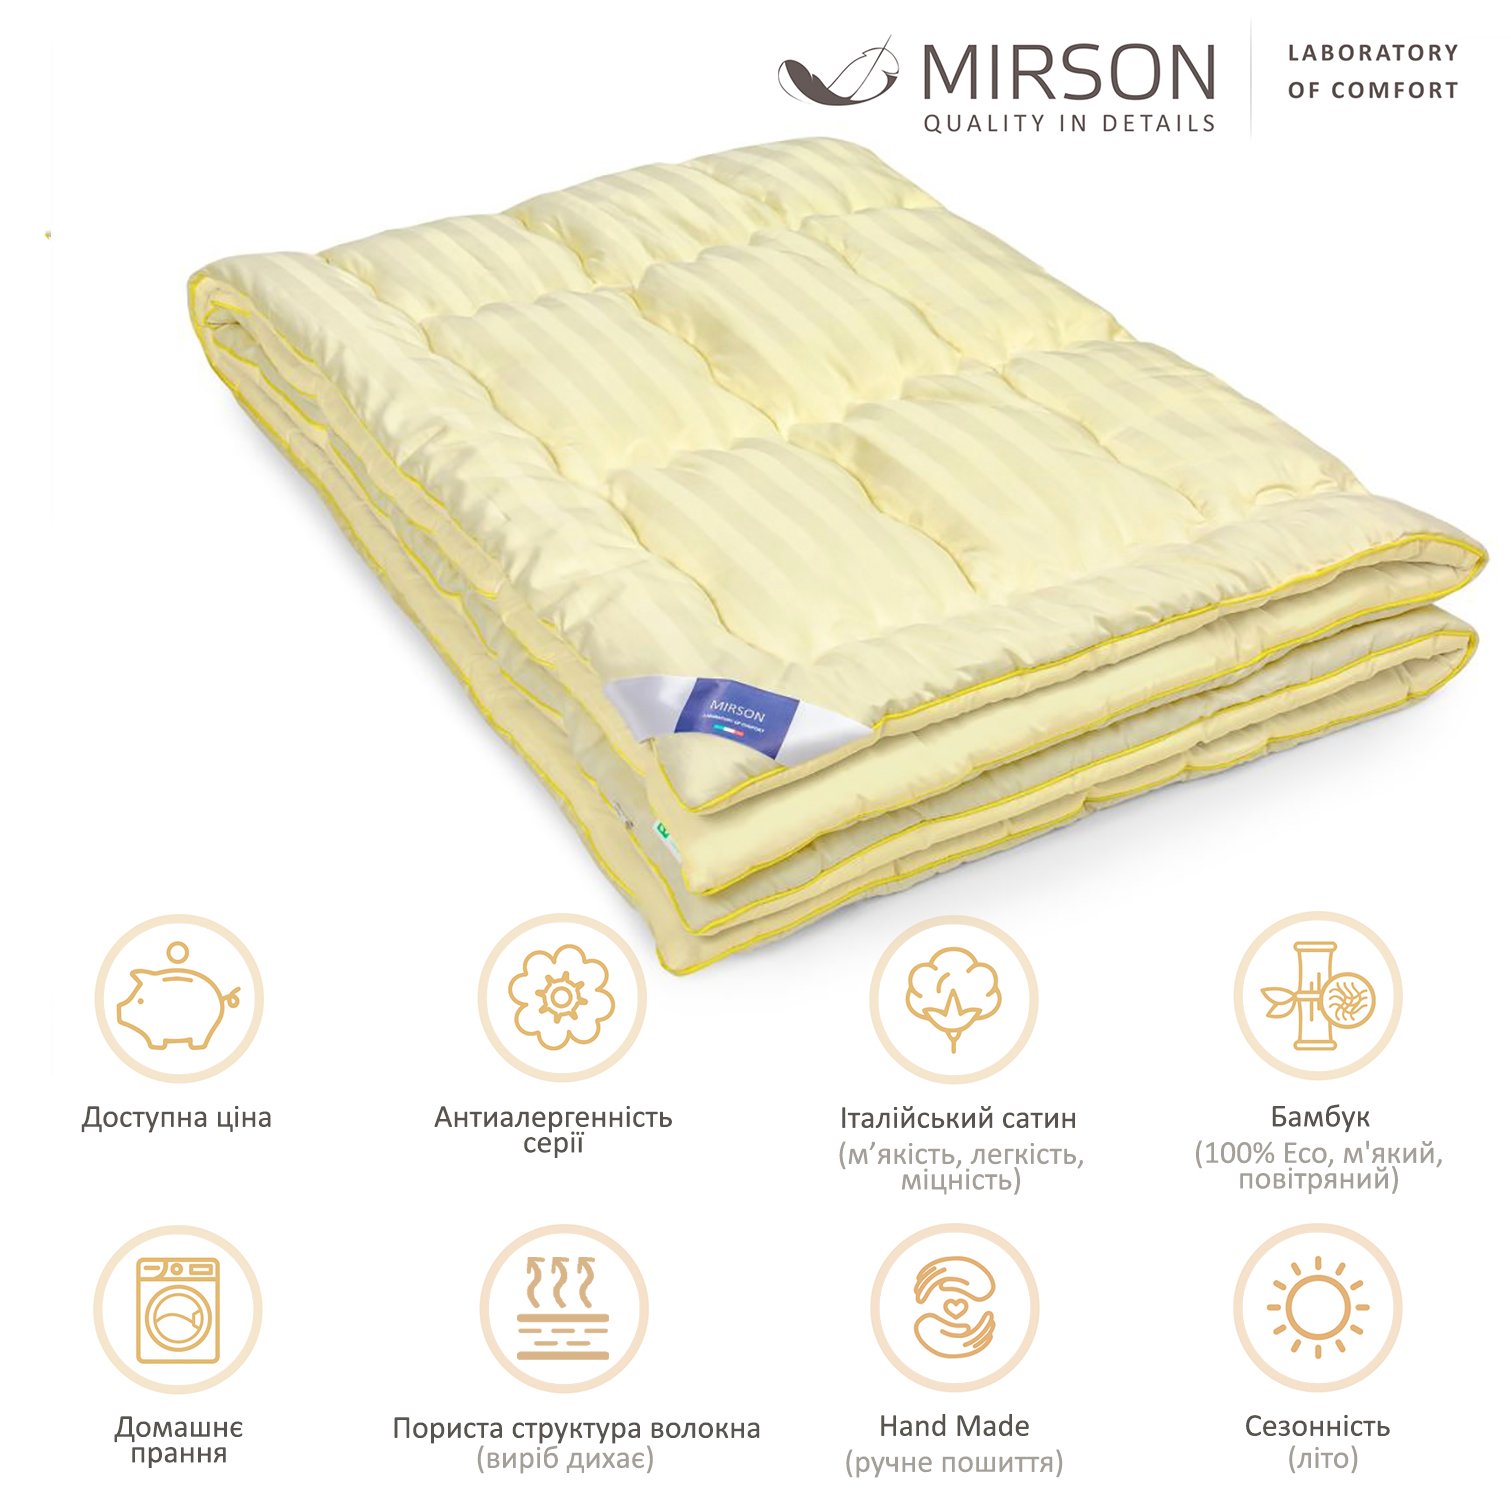 Одеяло бамбуковое MirSon Carmela Hand Made №0435, летнее, 140x205 см, светло-желтое - фото 5